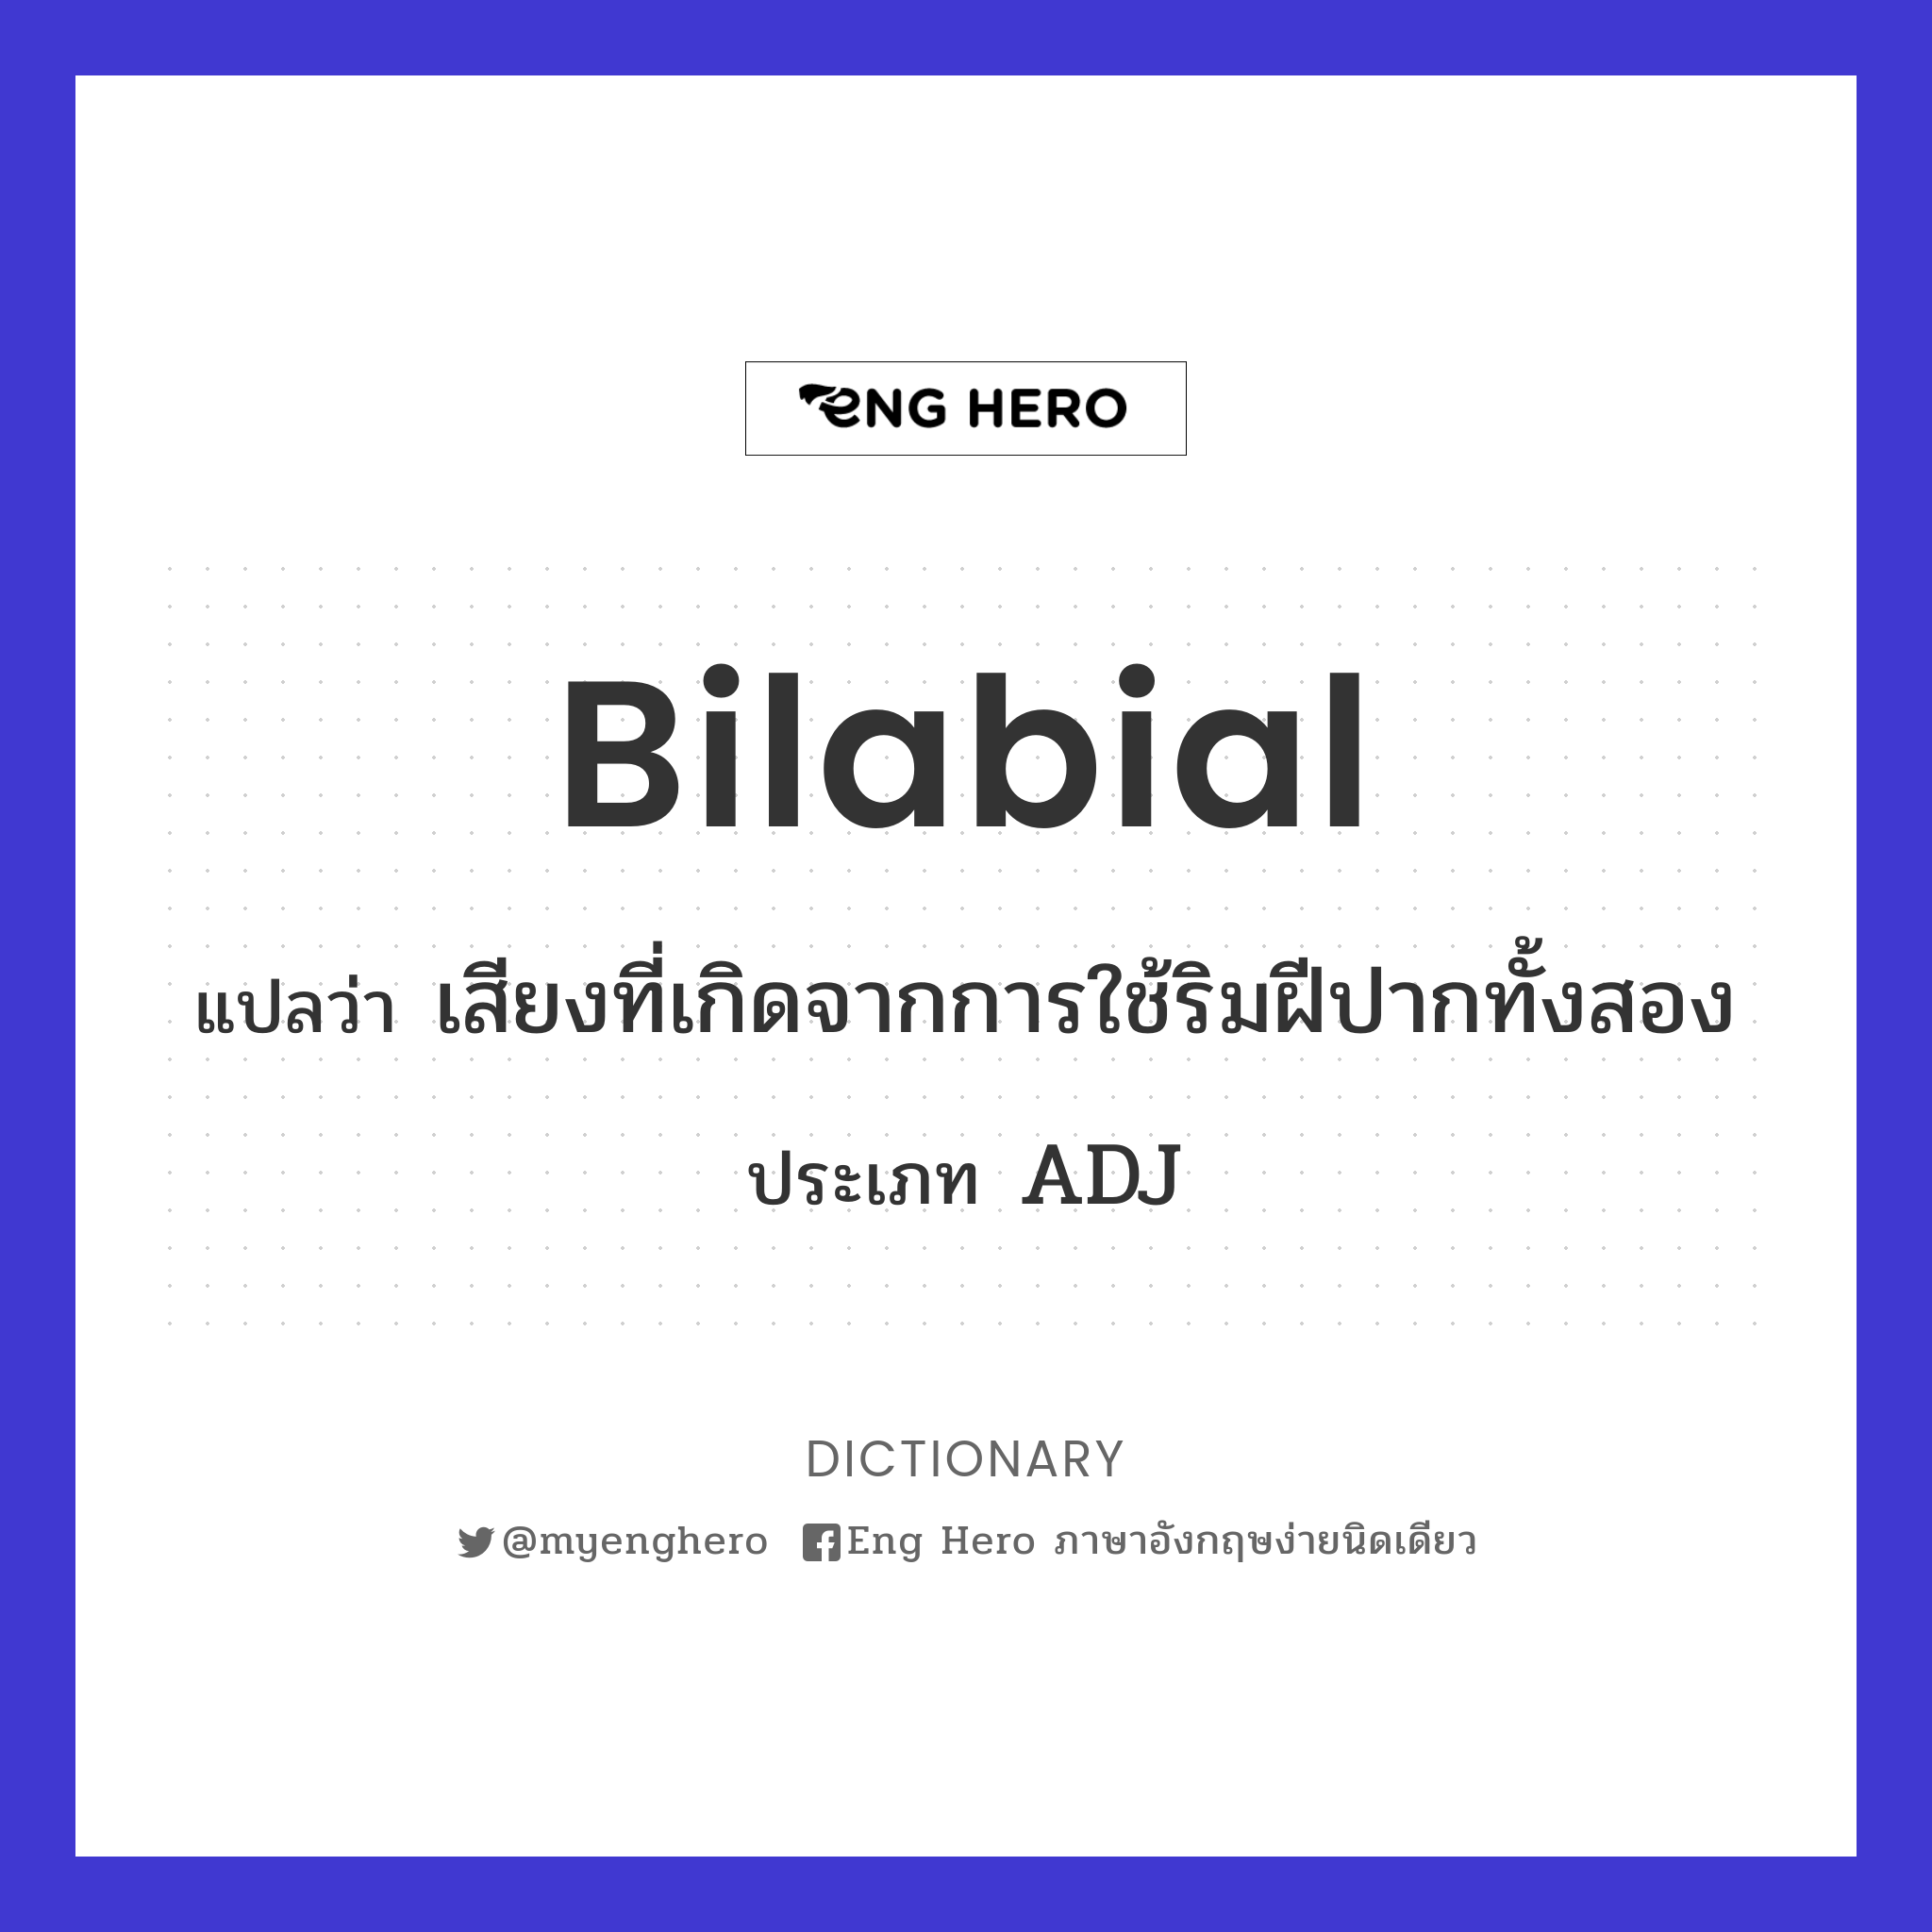 bilabial